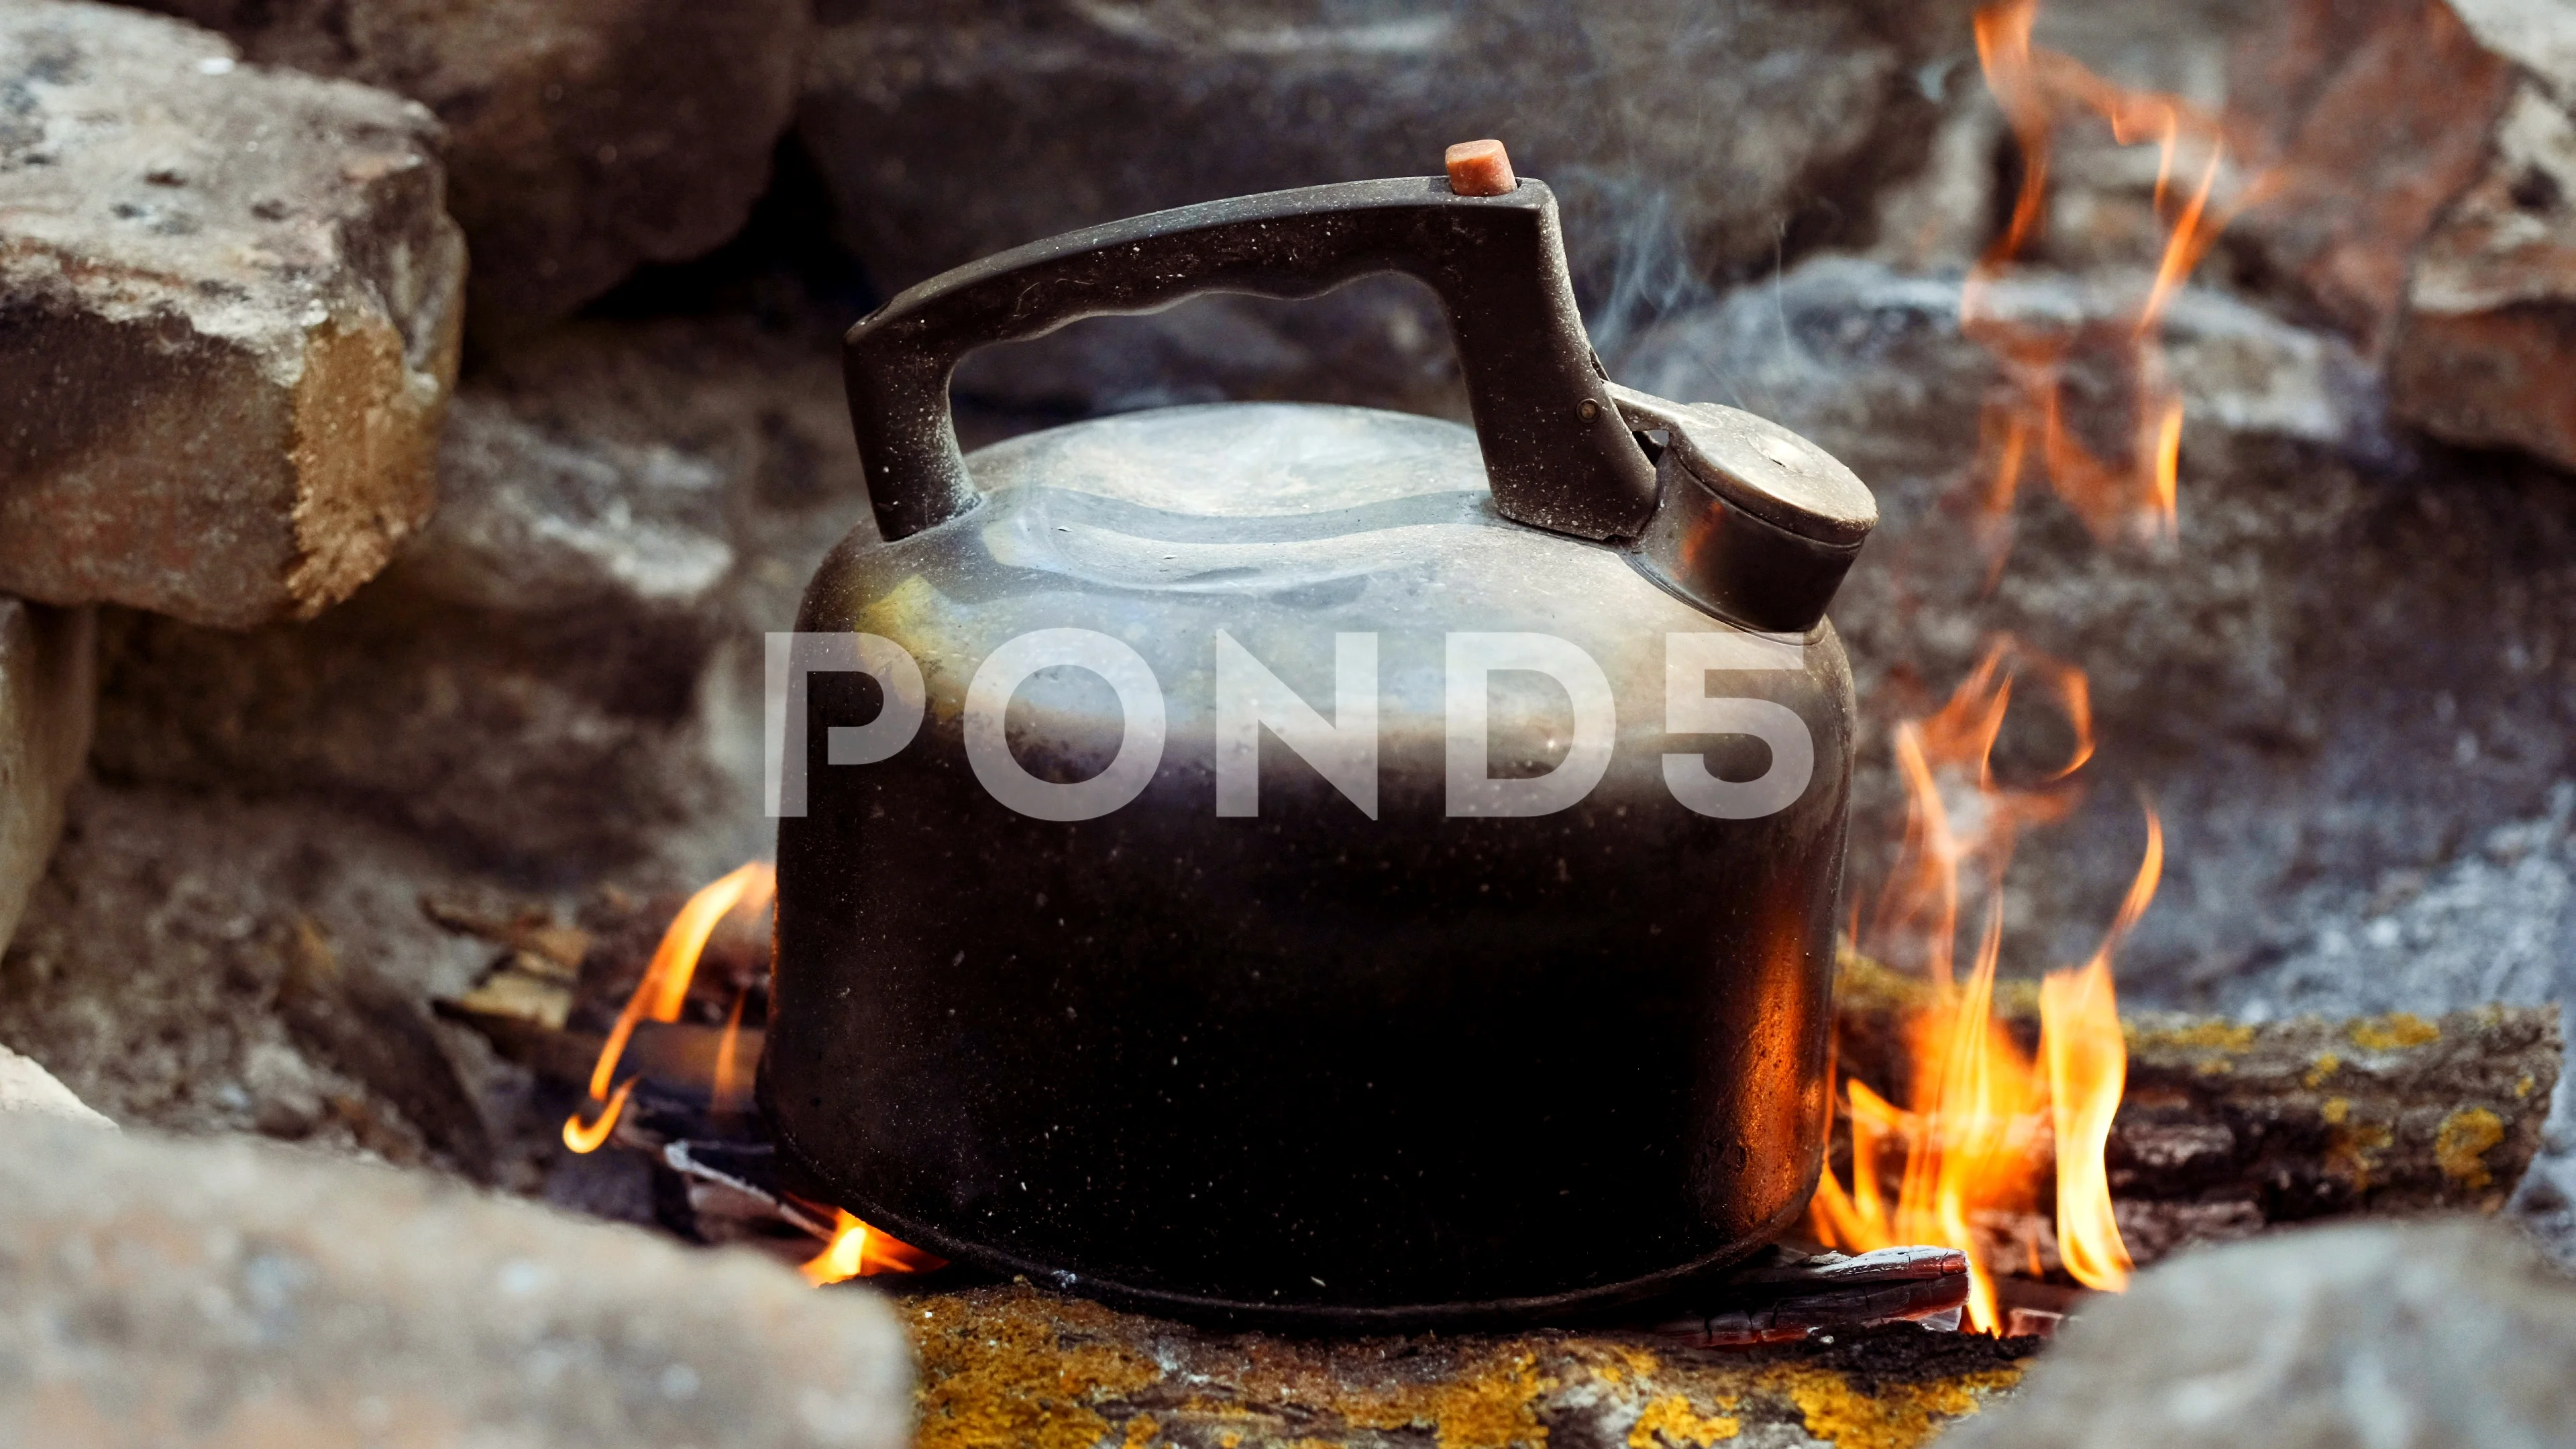 https://images.pond5.com/old-kettle-camping-fire-boiling-footage-117133283_prevstill.jpeg